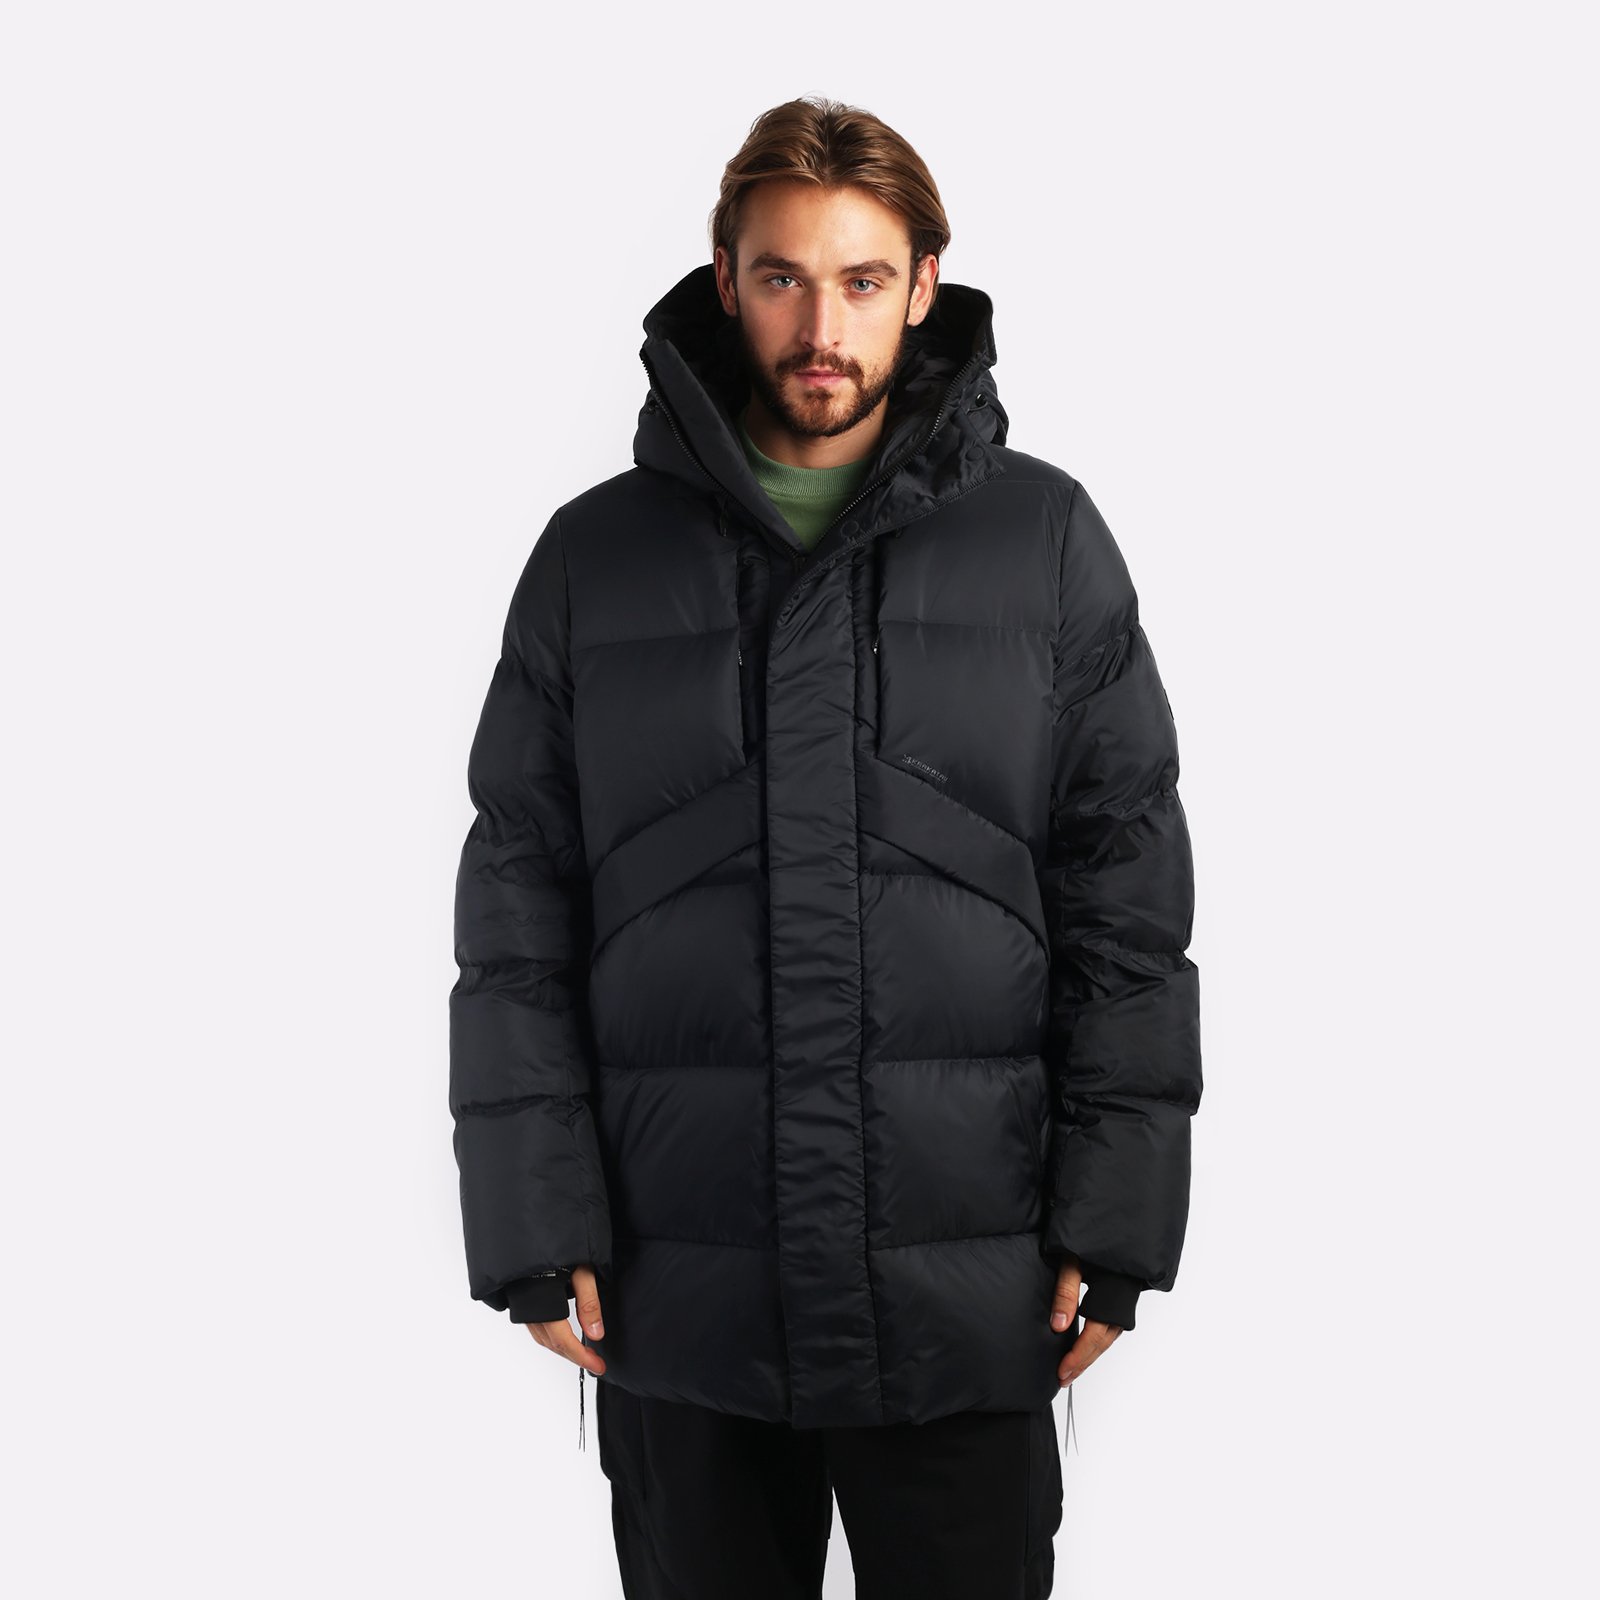 мужская куртка KRAKATAU Aitken  (Qm437-1-черный)  - цена, описание, фото 1